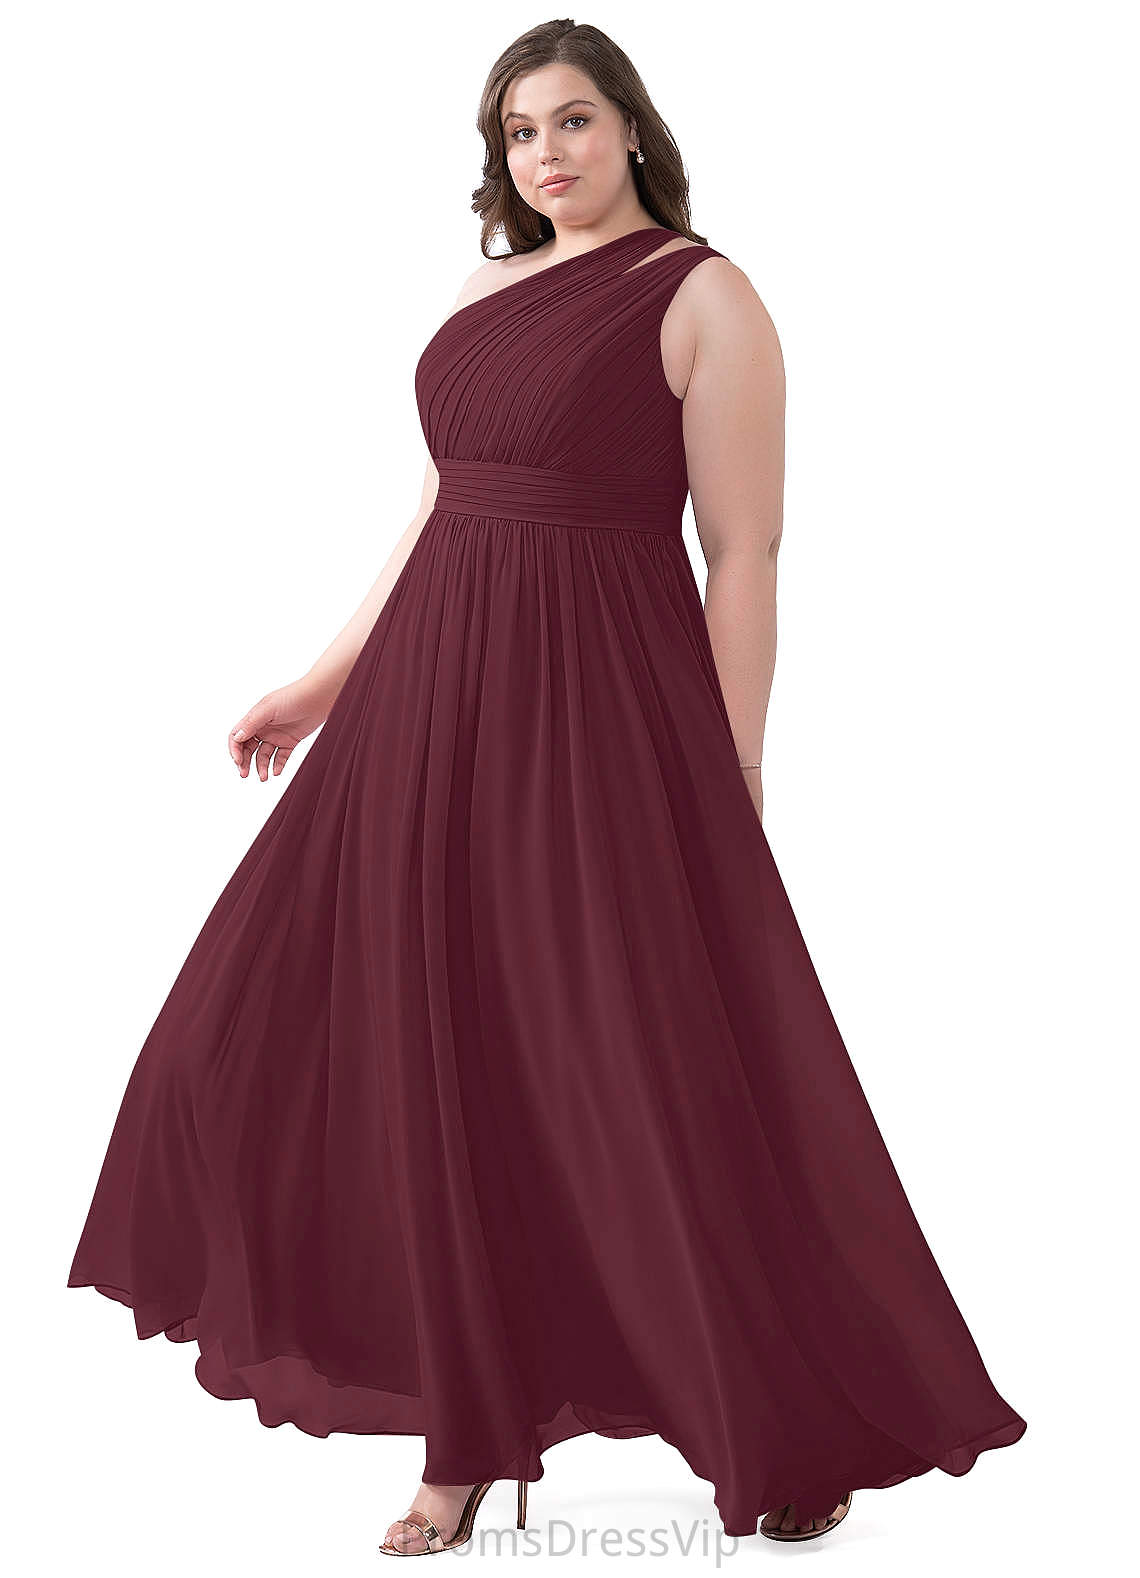 Gracie V-Neck Natural Waist Sleeveless A-Line/Princess Floor Length Bridesmaid Dresses